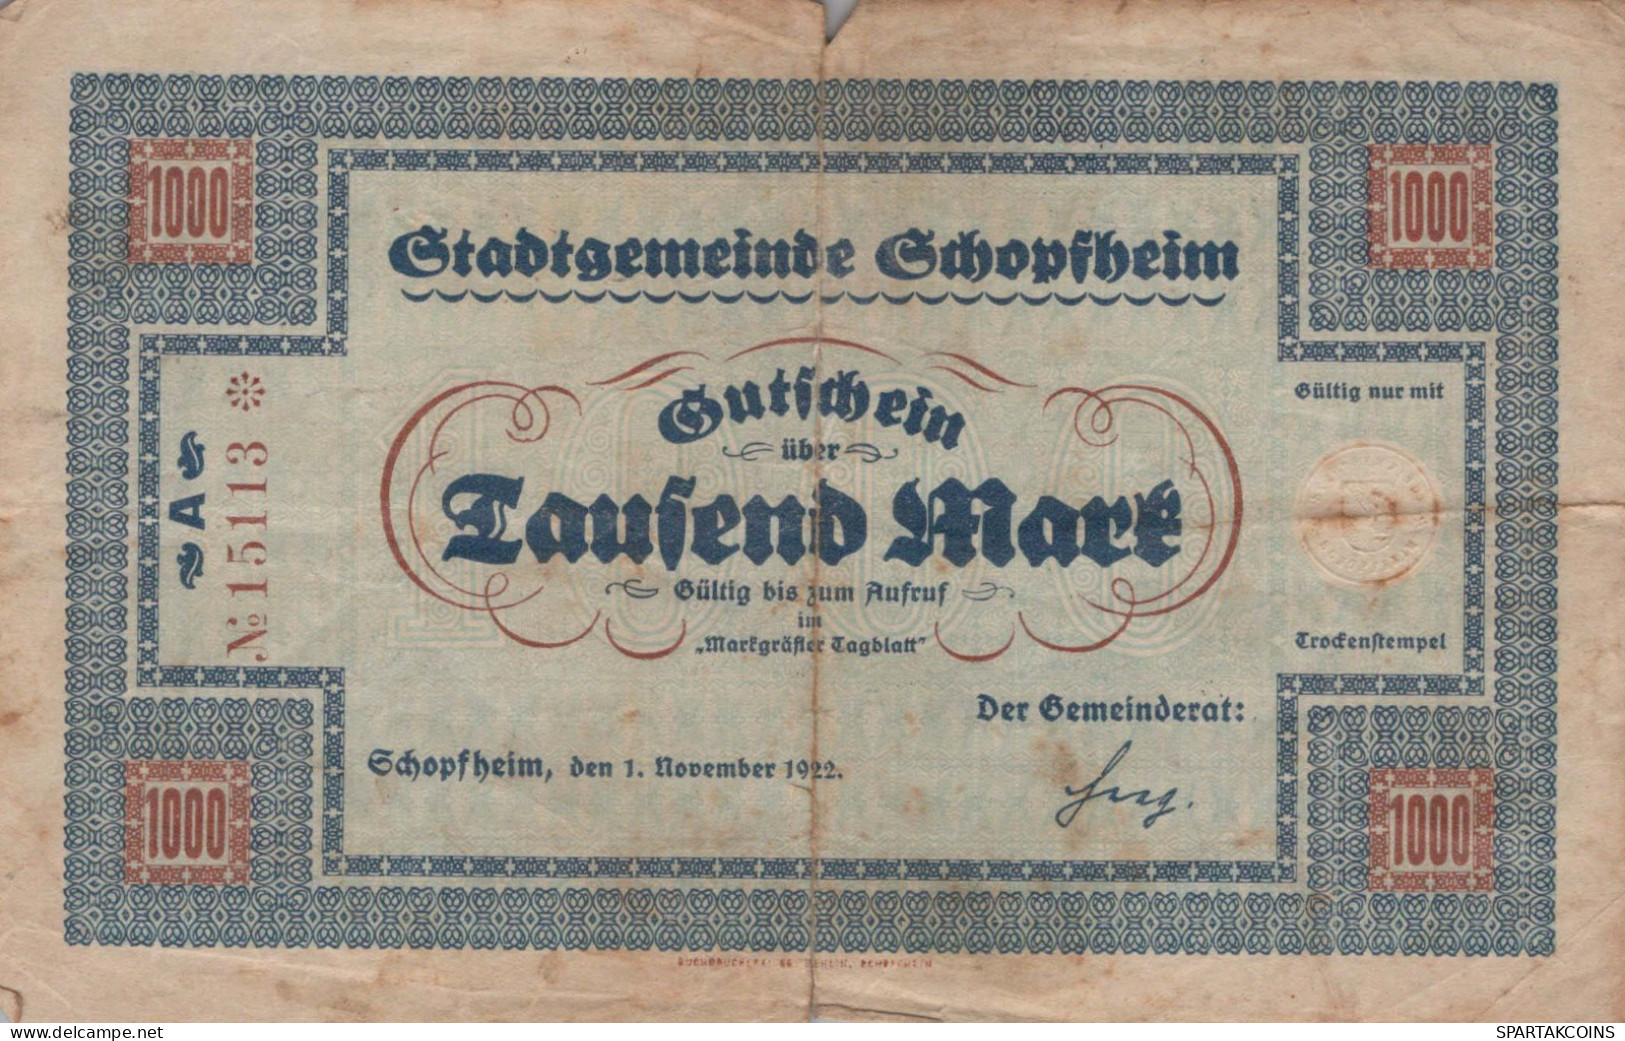 1000 MARK 1922 Stadt SCHOPFHEIM Baden DEUTSCHLAND Notgeld Papiergeld Banknote #PK948 - [11] Local Banknote Issues